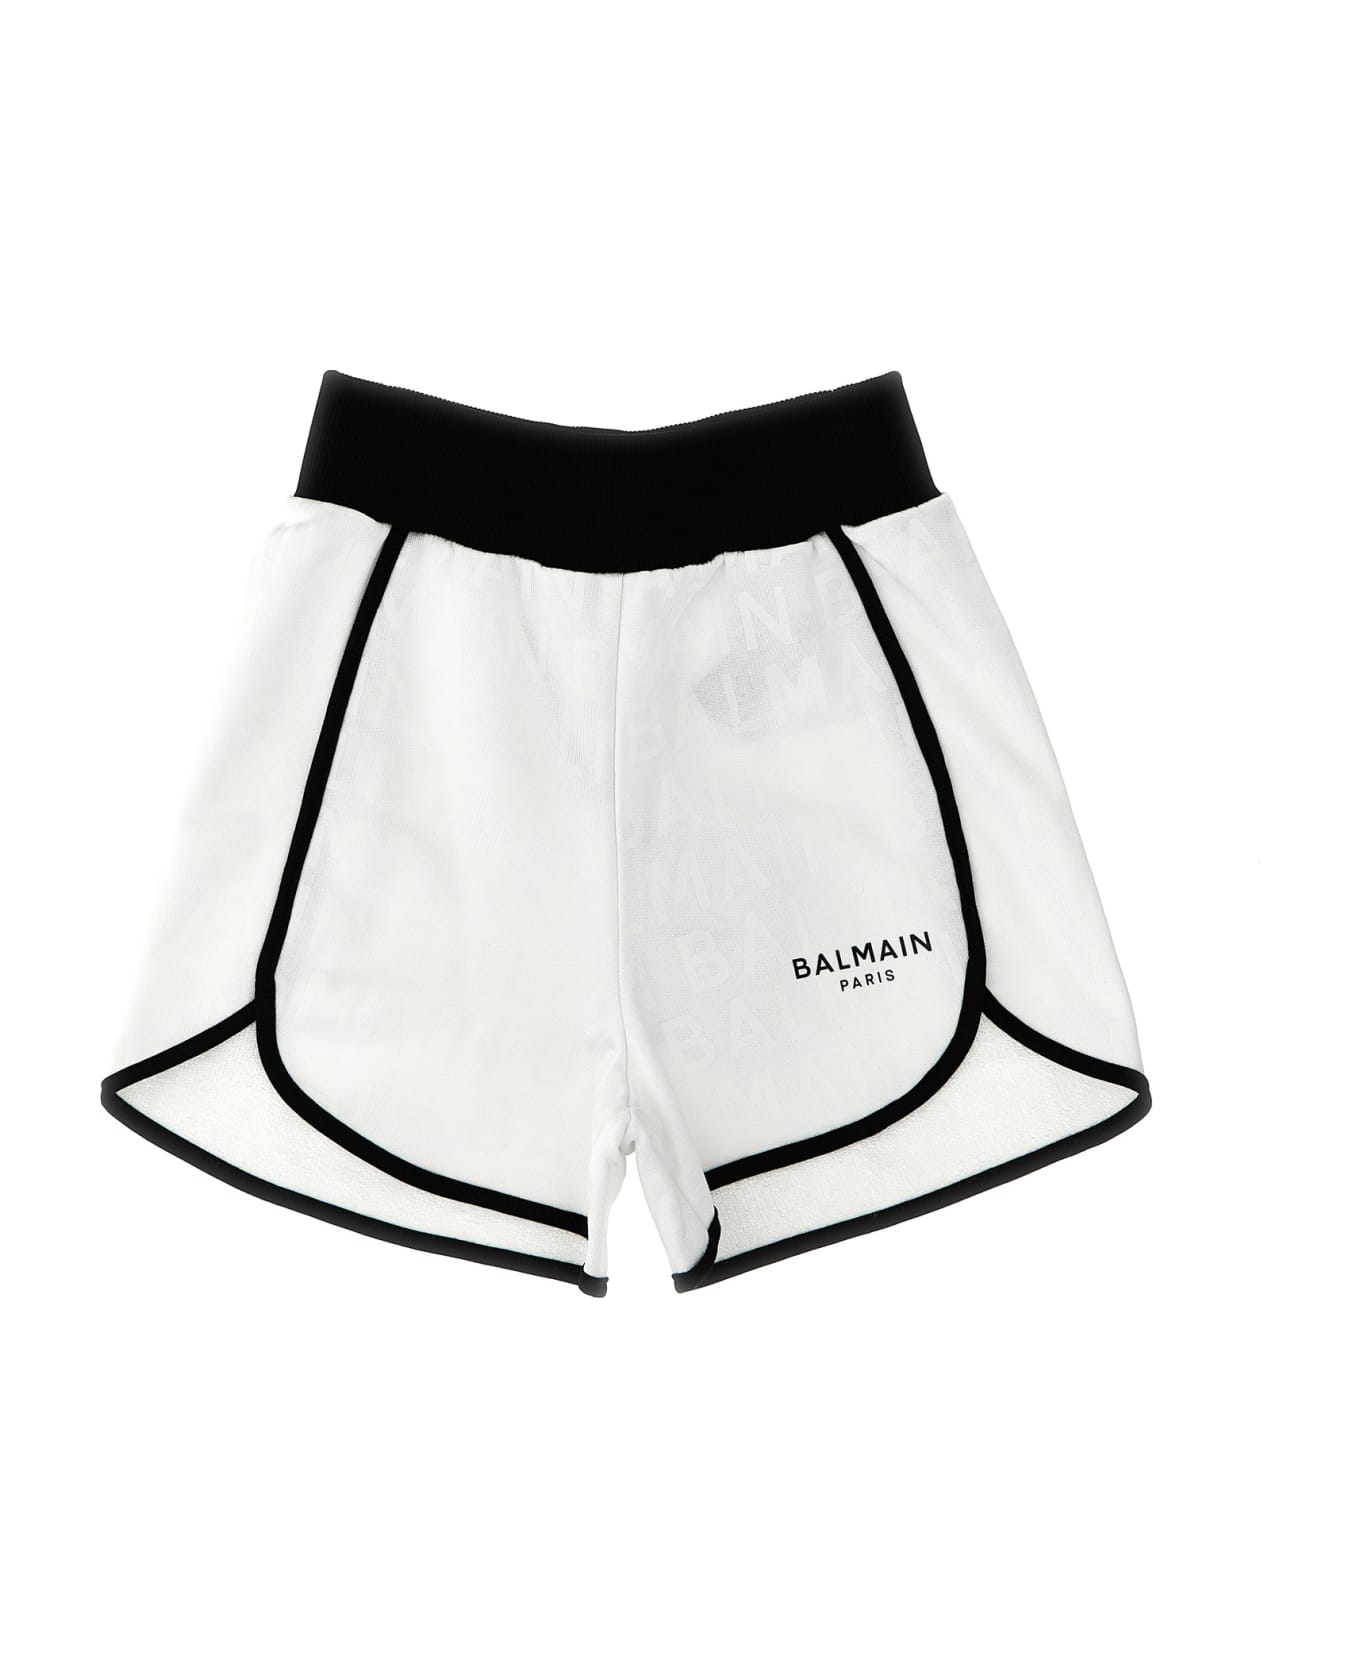 Balmain Logo Shorts - White/Black ボトムス